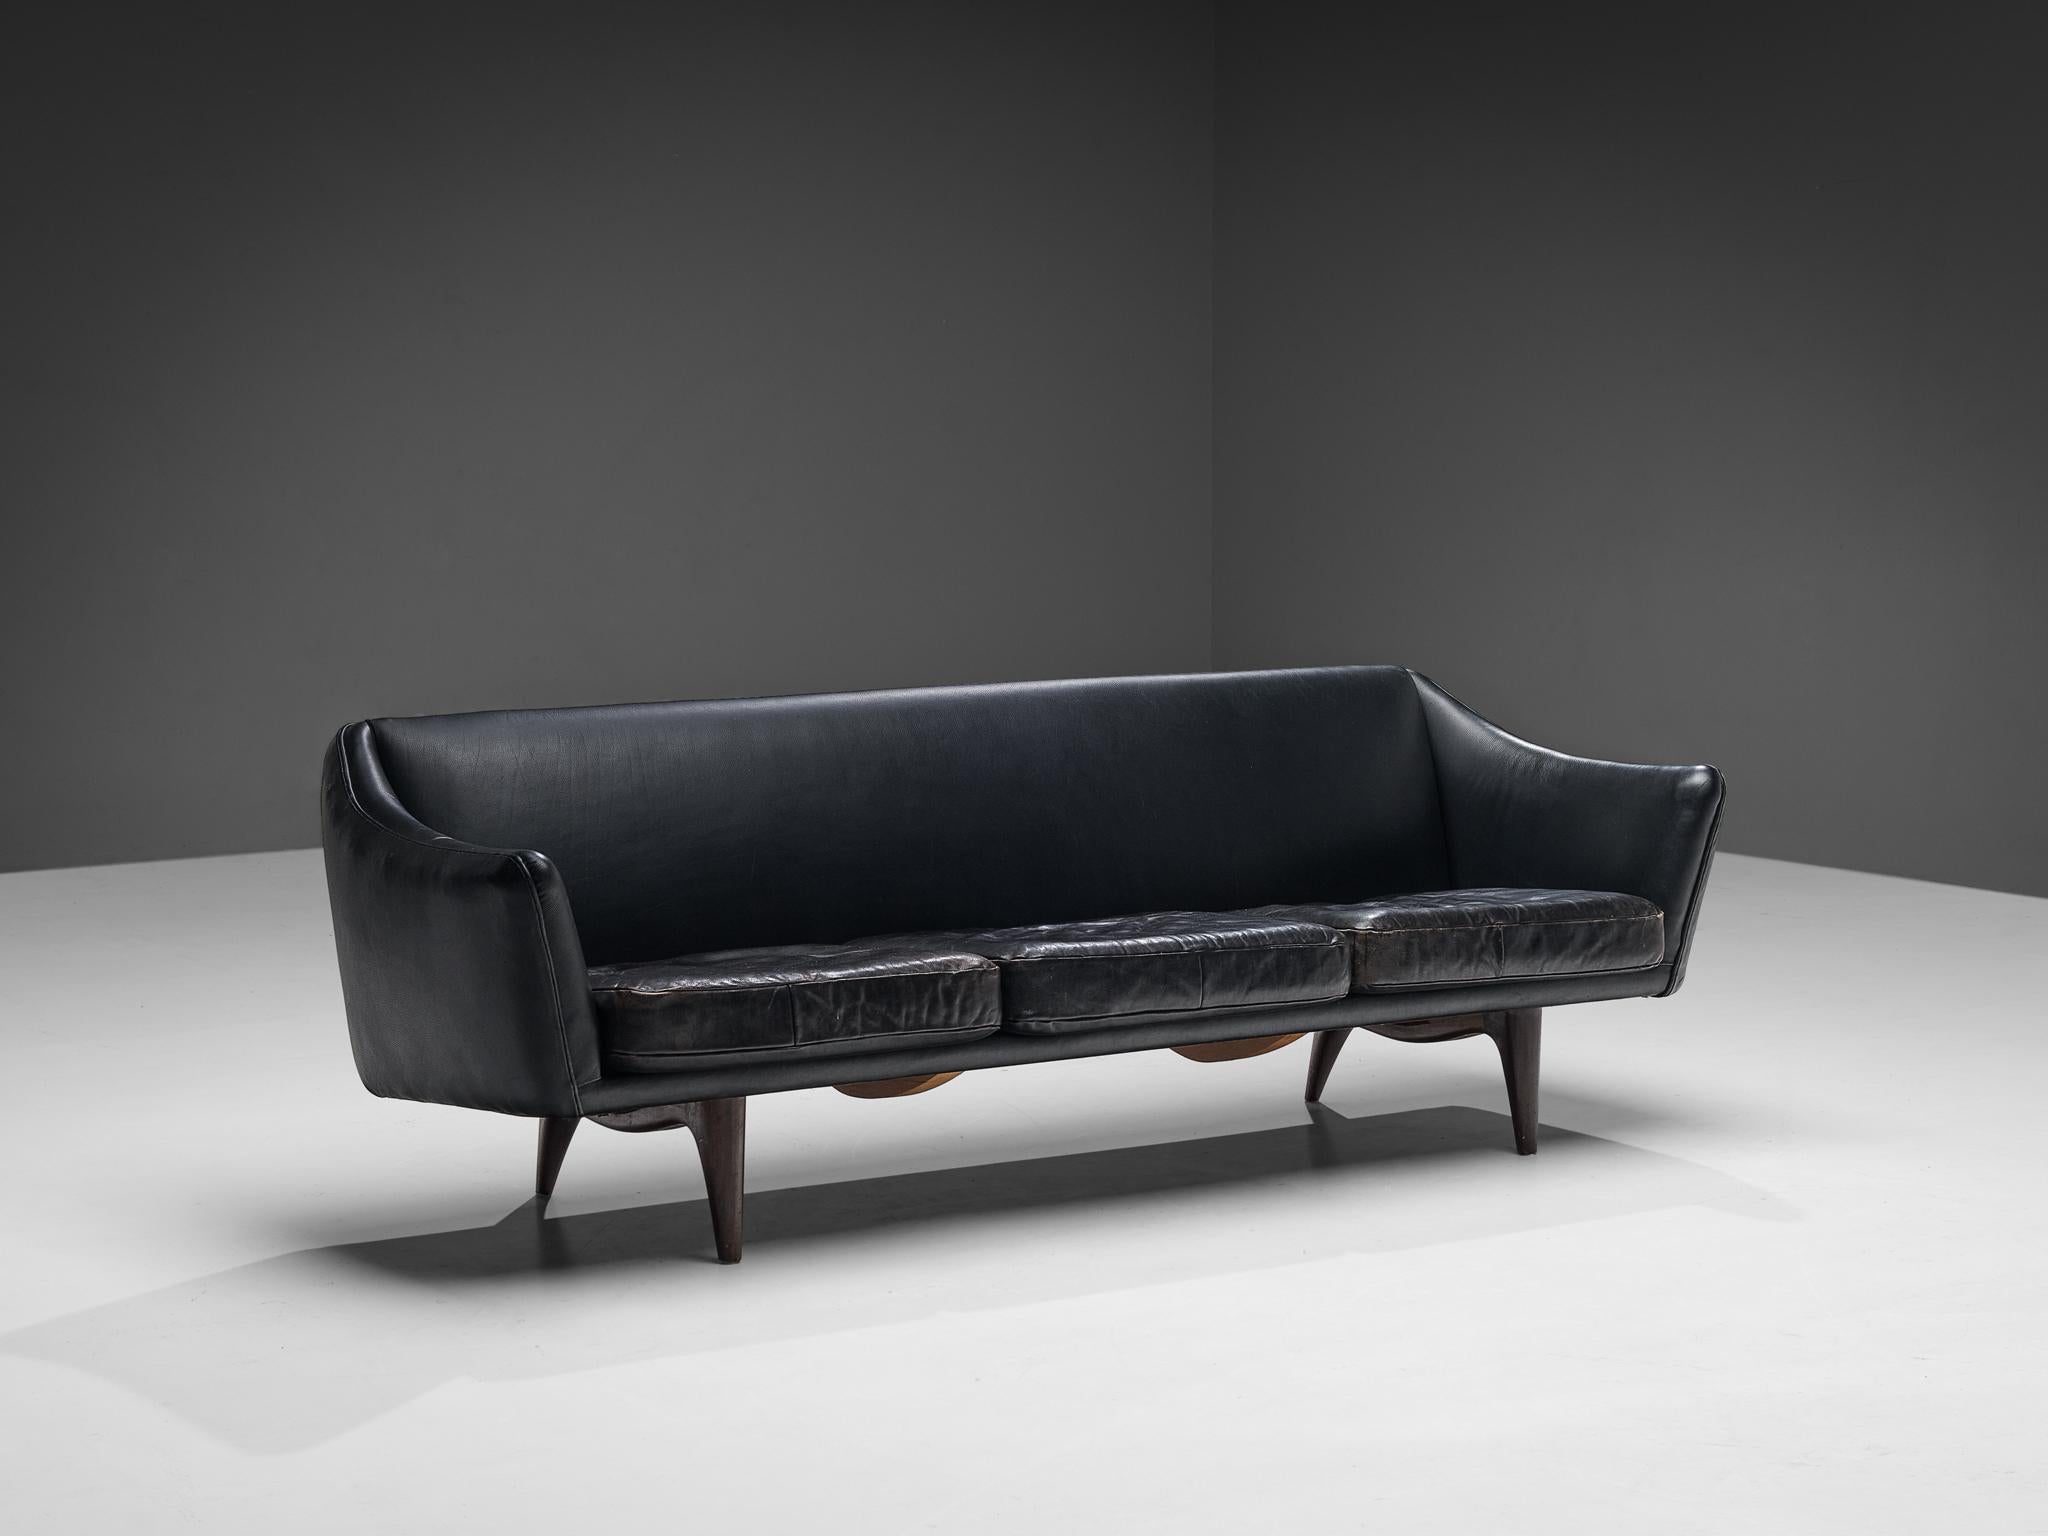 Illum Wikkelsø für A. Mikael Laursen & Søn, Sofa, Modell 'ML-140', Leder, Mahagoni, Dänemark, 1950er Jahre. 

Dieses raffinierte Sofa zeigt eine ungewöhnliche Eleganz und einen großen Blick für Details, kombiniert mit einer hervorragenden